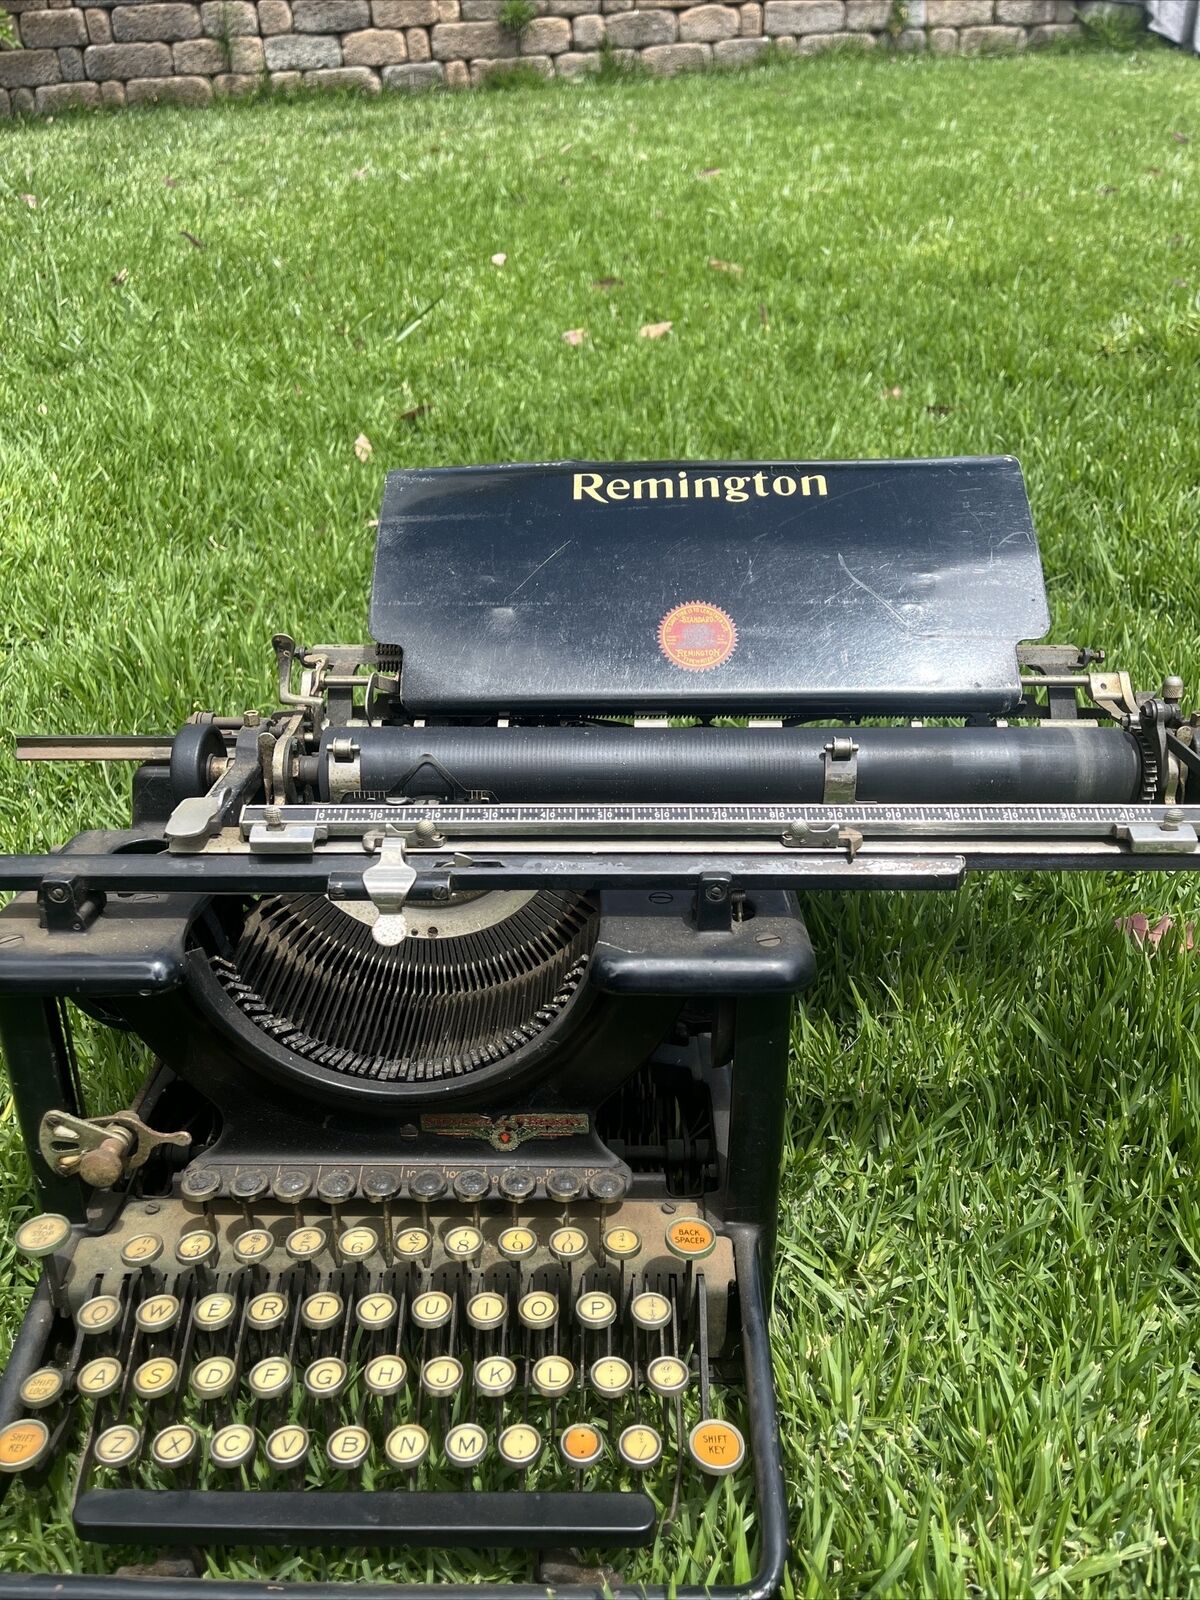 Antique 1920's Remington No. 12 Standard Correspondence Desktop Typewriter